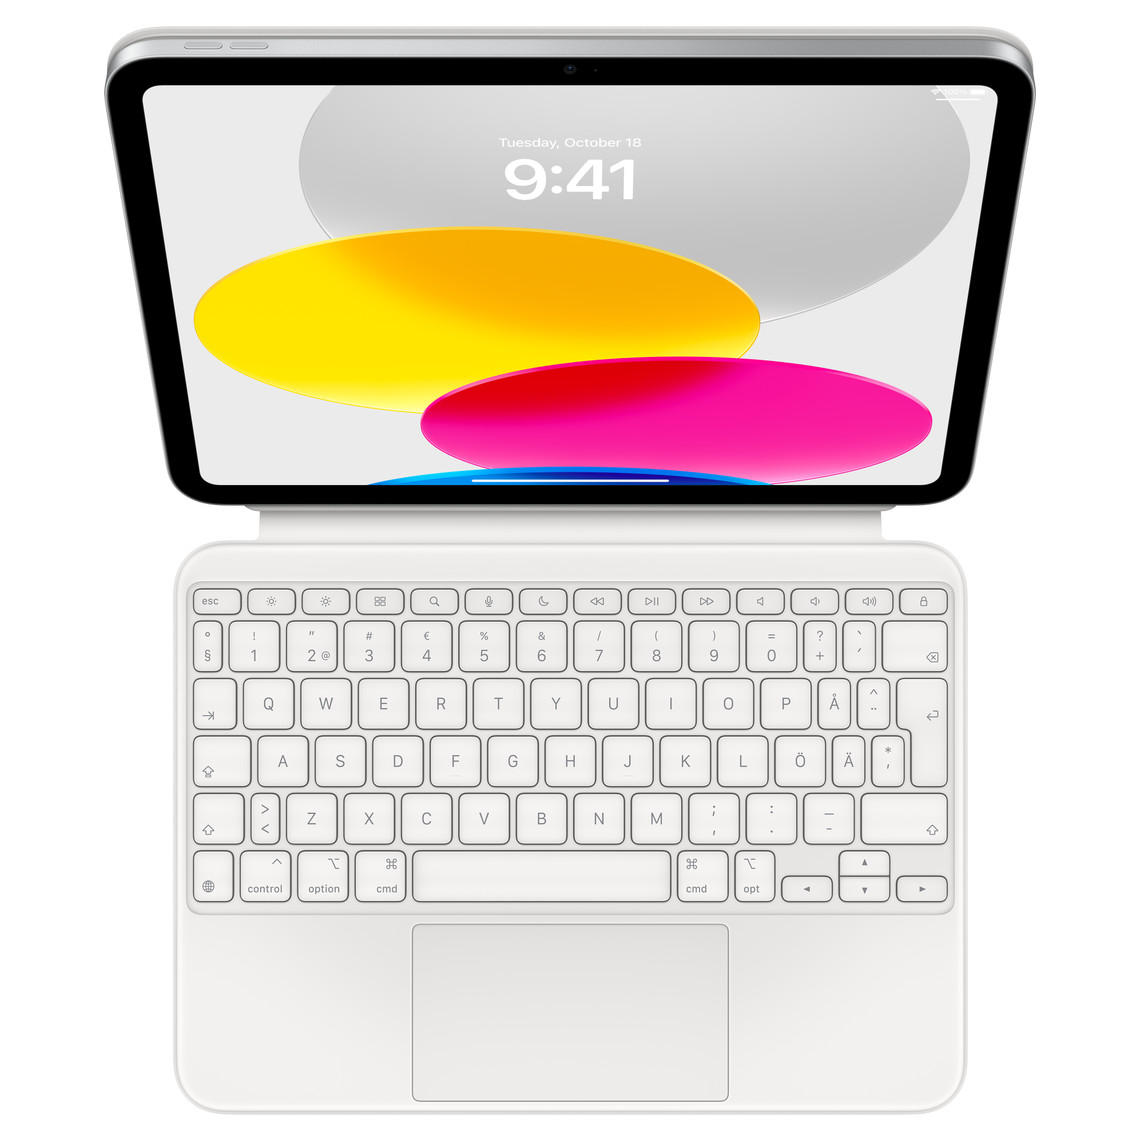 iPad sedd ovanifrån ansluten till Magic Keyboard Folio som ligger plant. Skärm som visar färgglad grafik med cirklar.